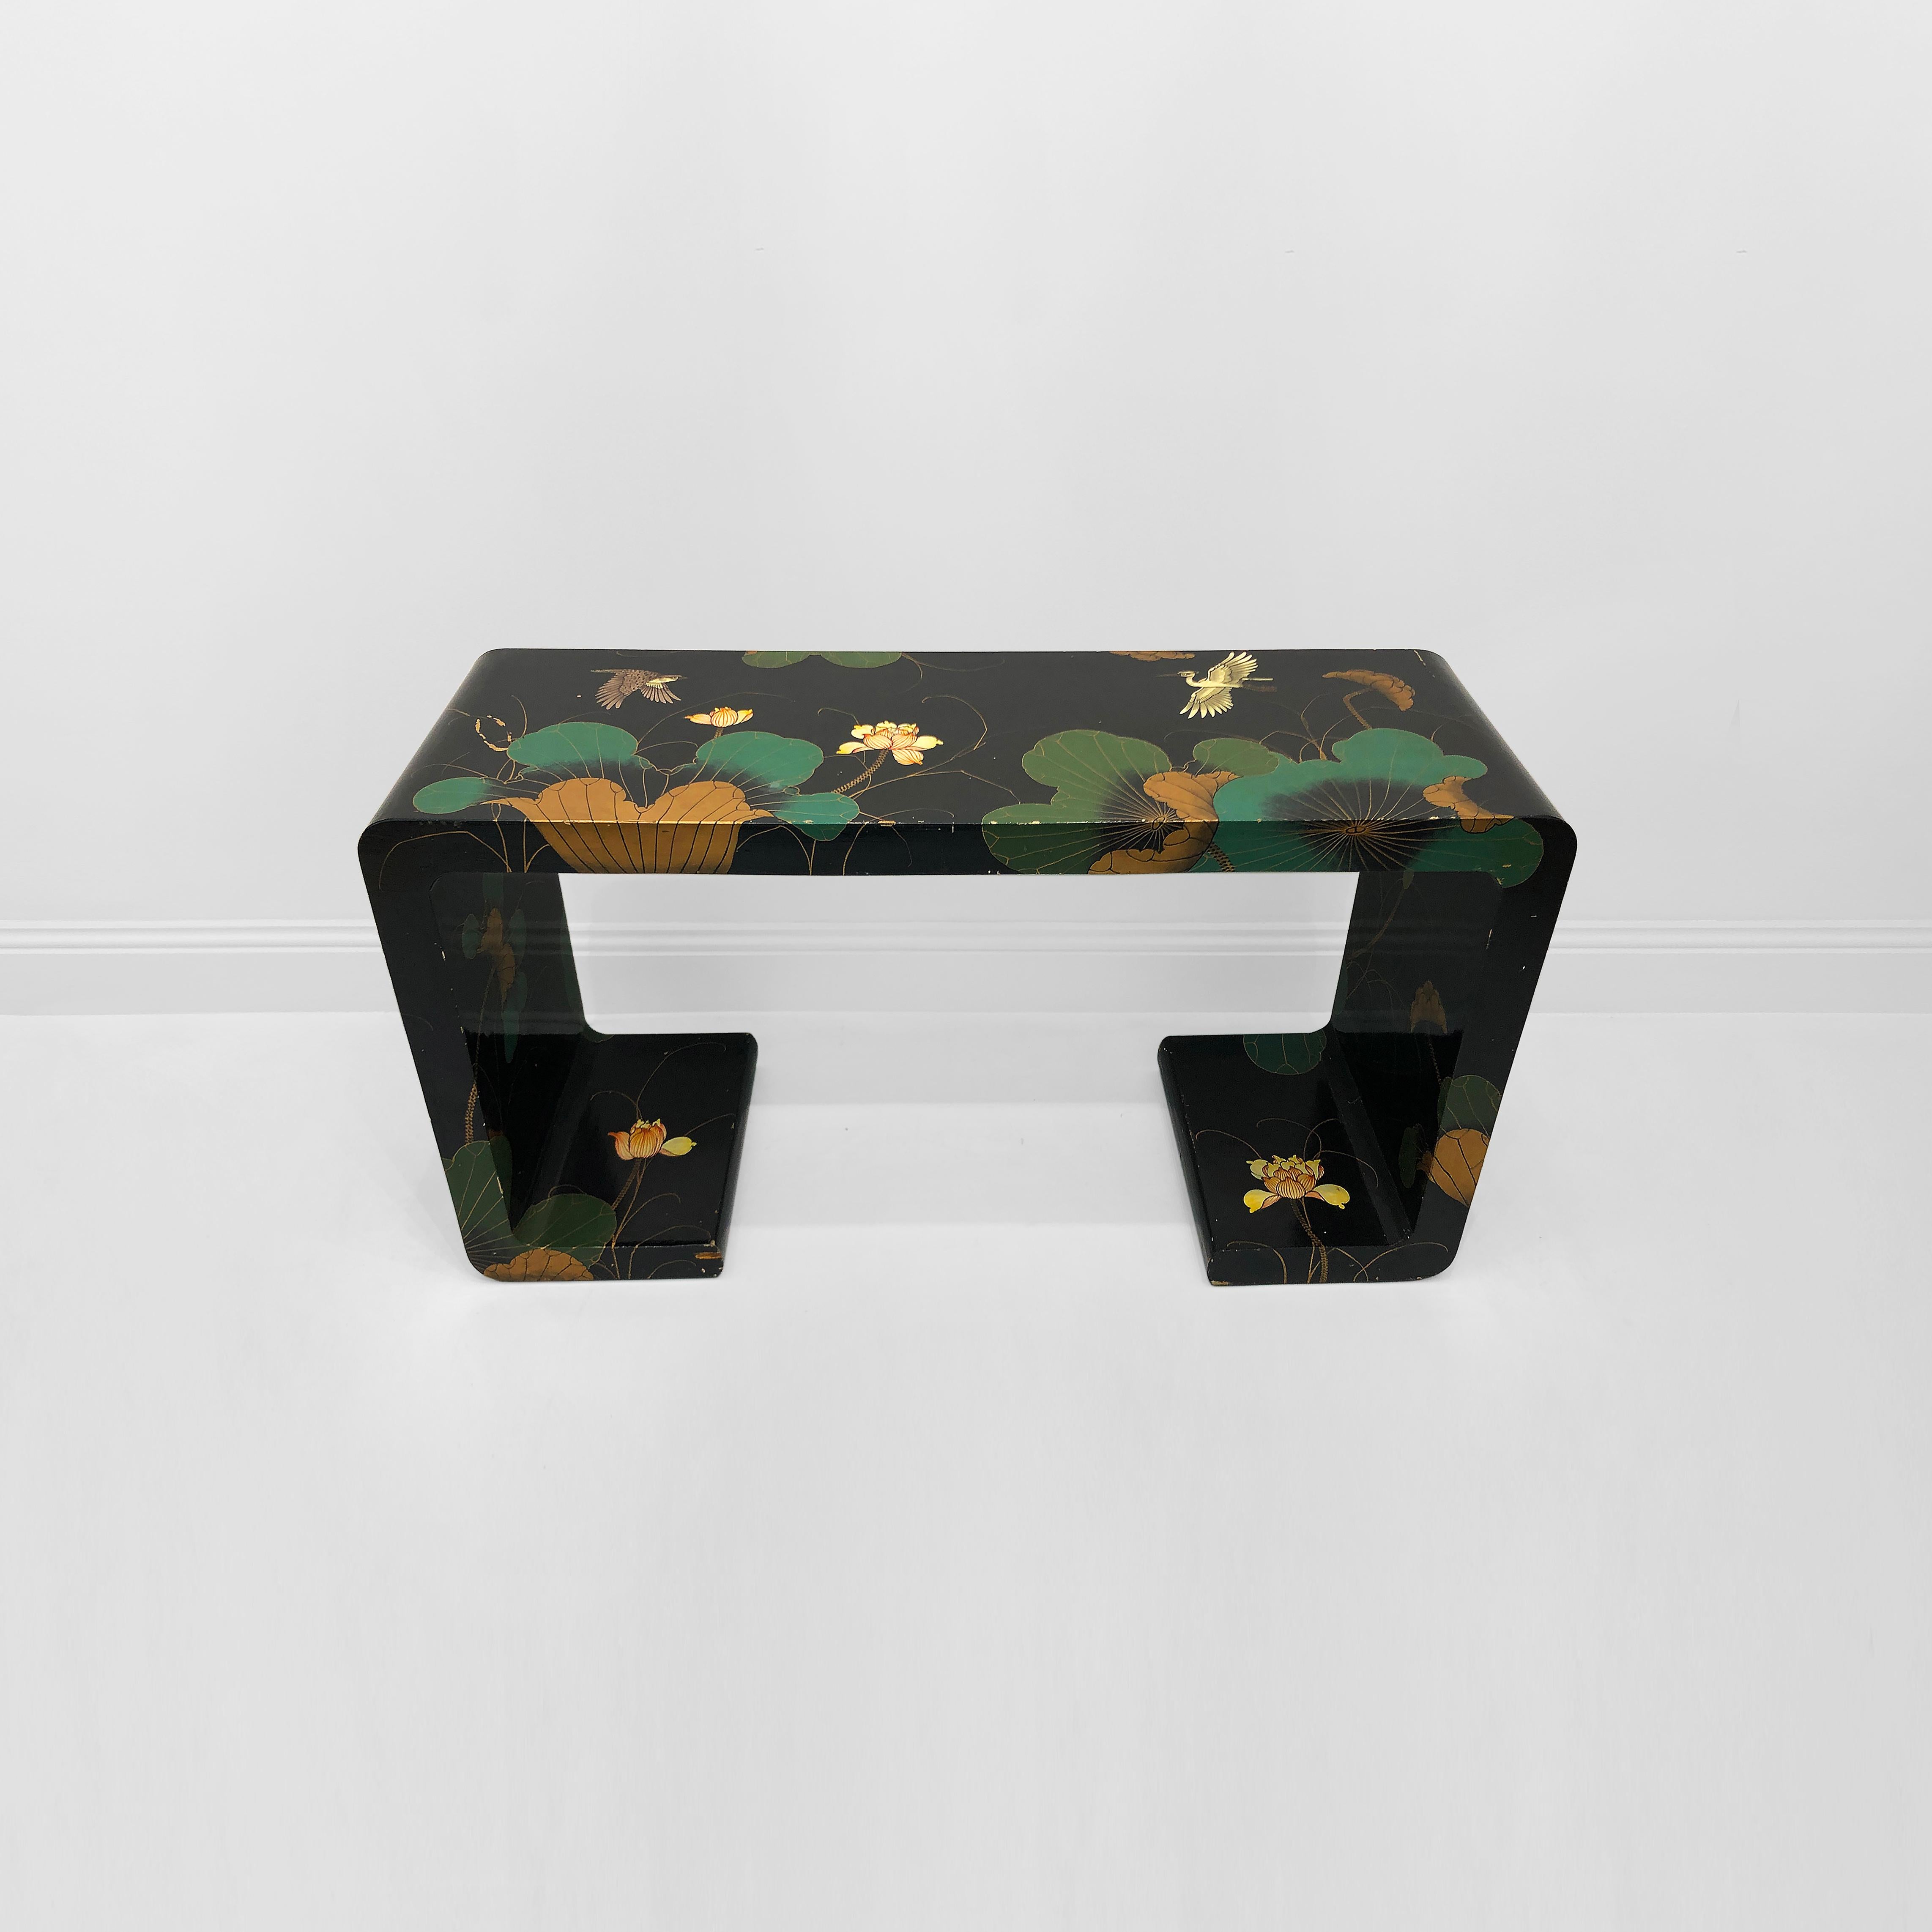 Cette table console en cascade Chinoiserie des années 1970 est un meuble remarquable qui dégage un mélange d'élégance et de charme exotique. La table console a une forme organique élégante avec des côtés et une base en cascade. Le fond noir offre un